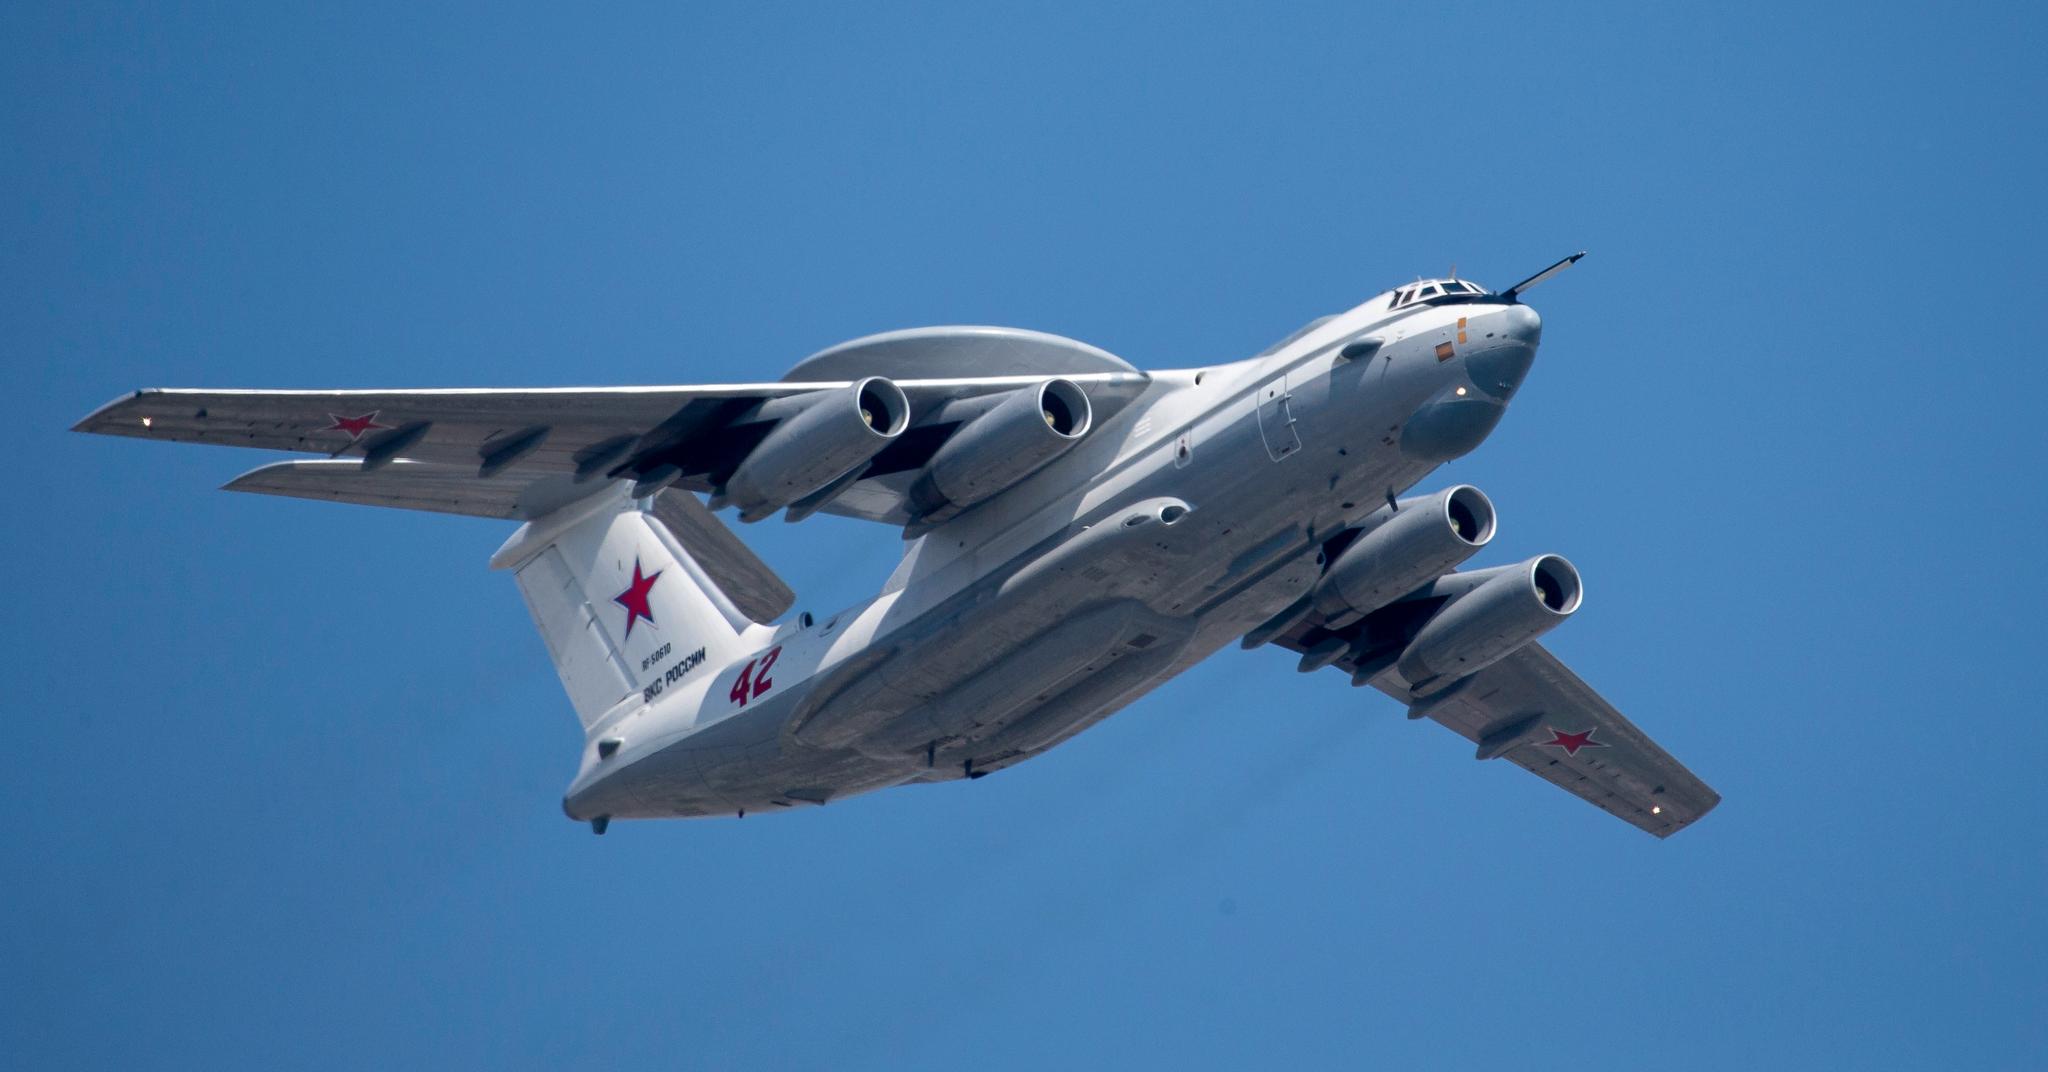 Russia’s Advanced Spy Plane Shot Down in Ukraine: A Tragic Black Day